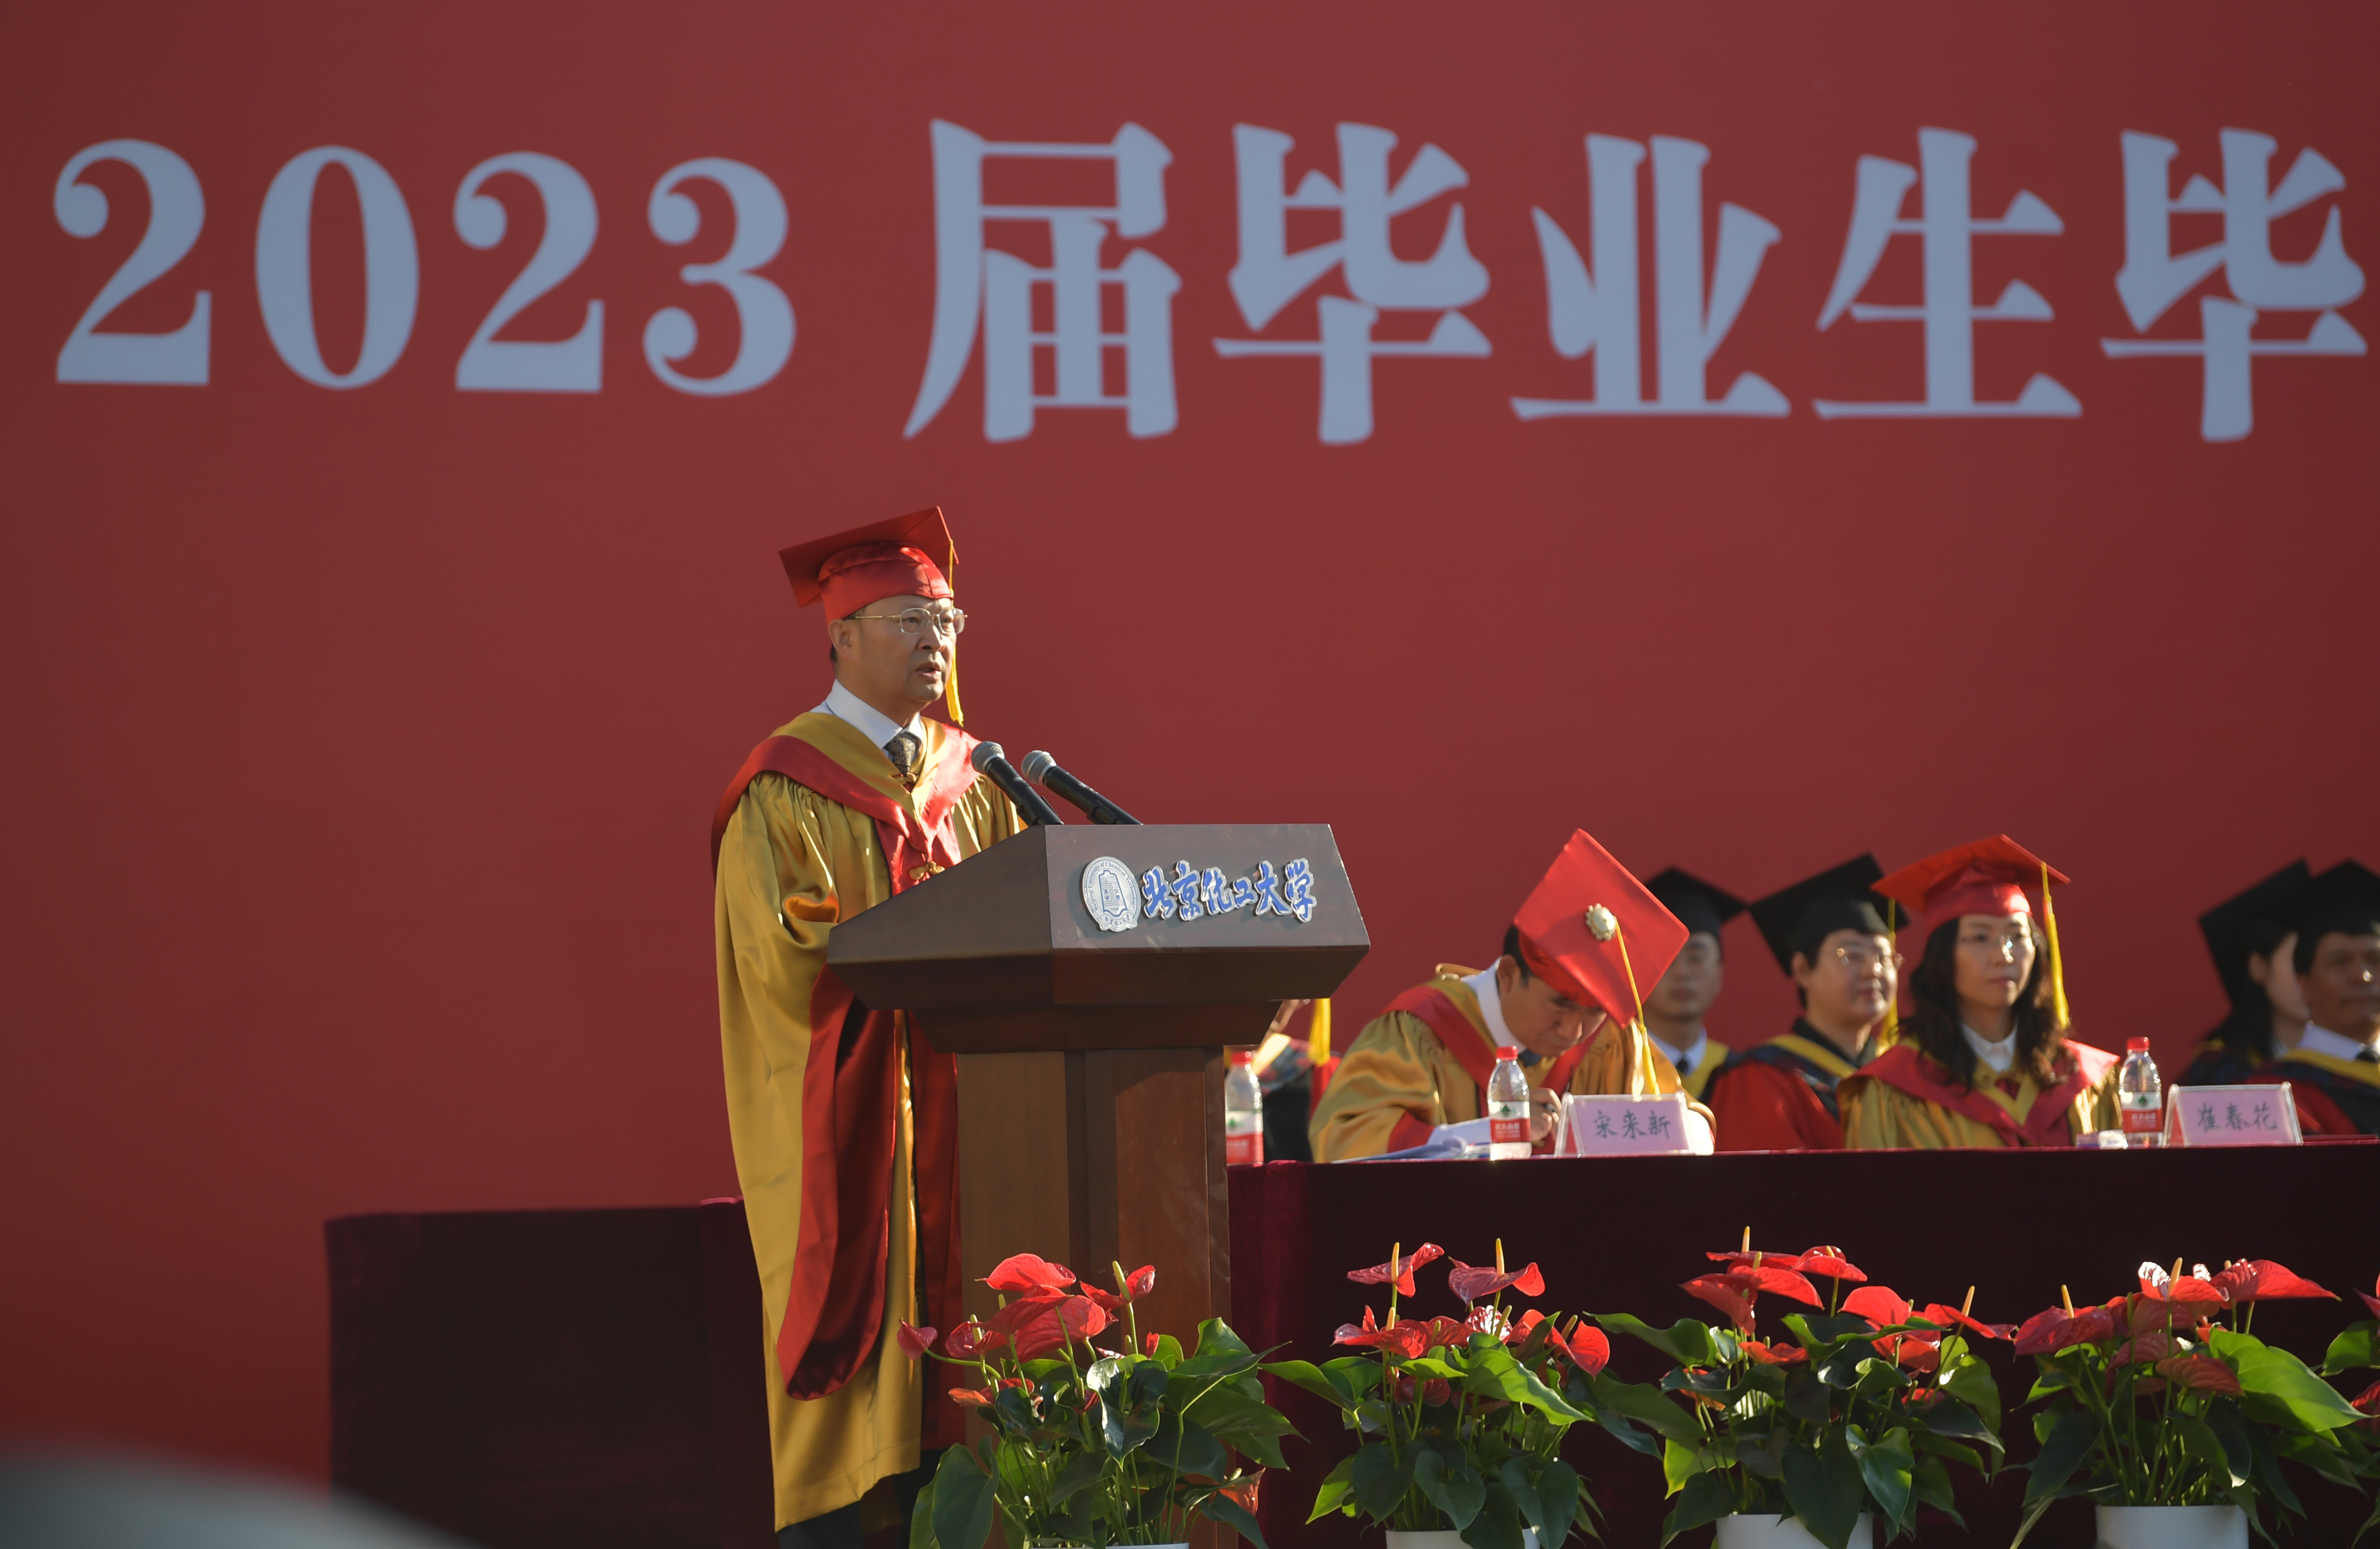 校园场景变成时光掠影拼图,北京化工大学学子给母校送毕业礼